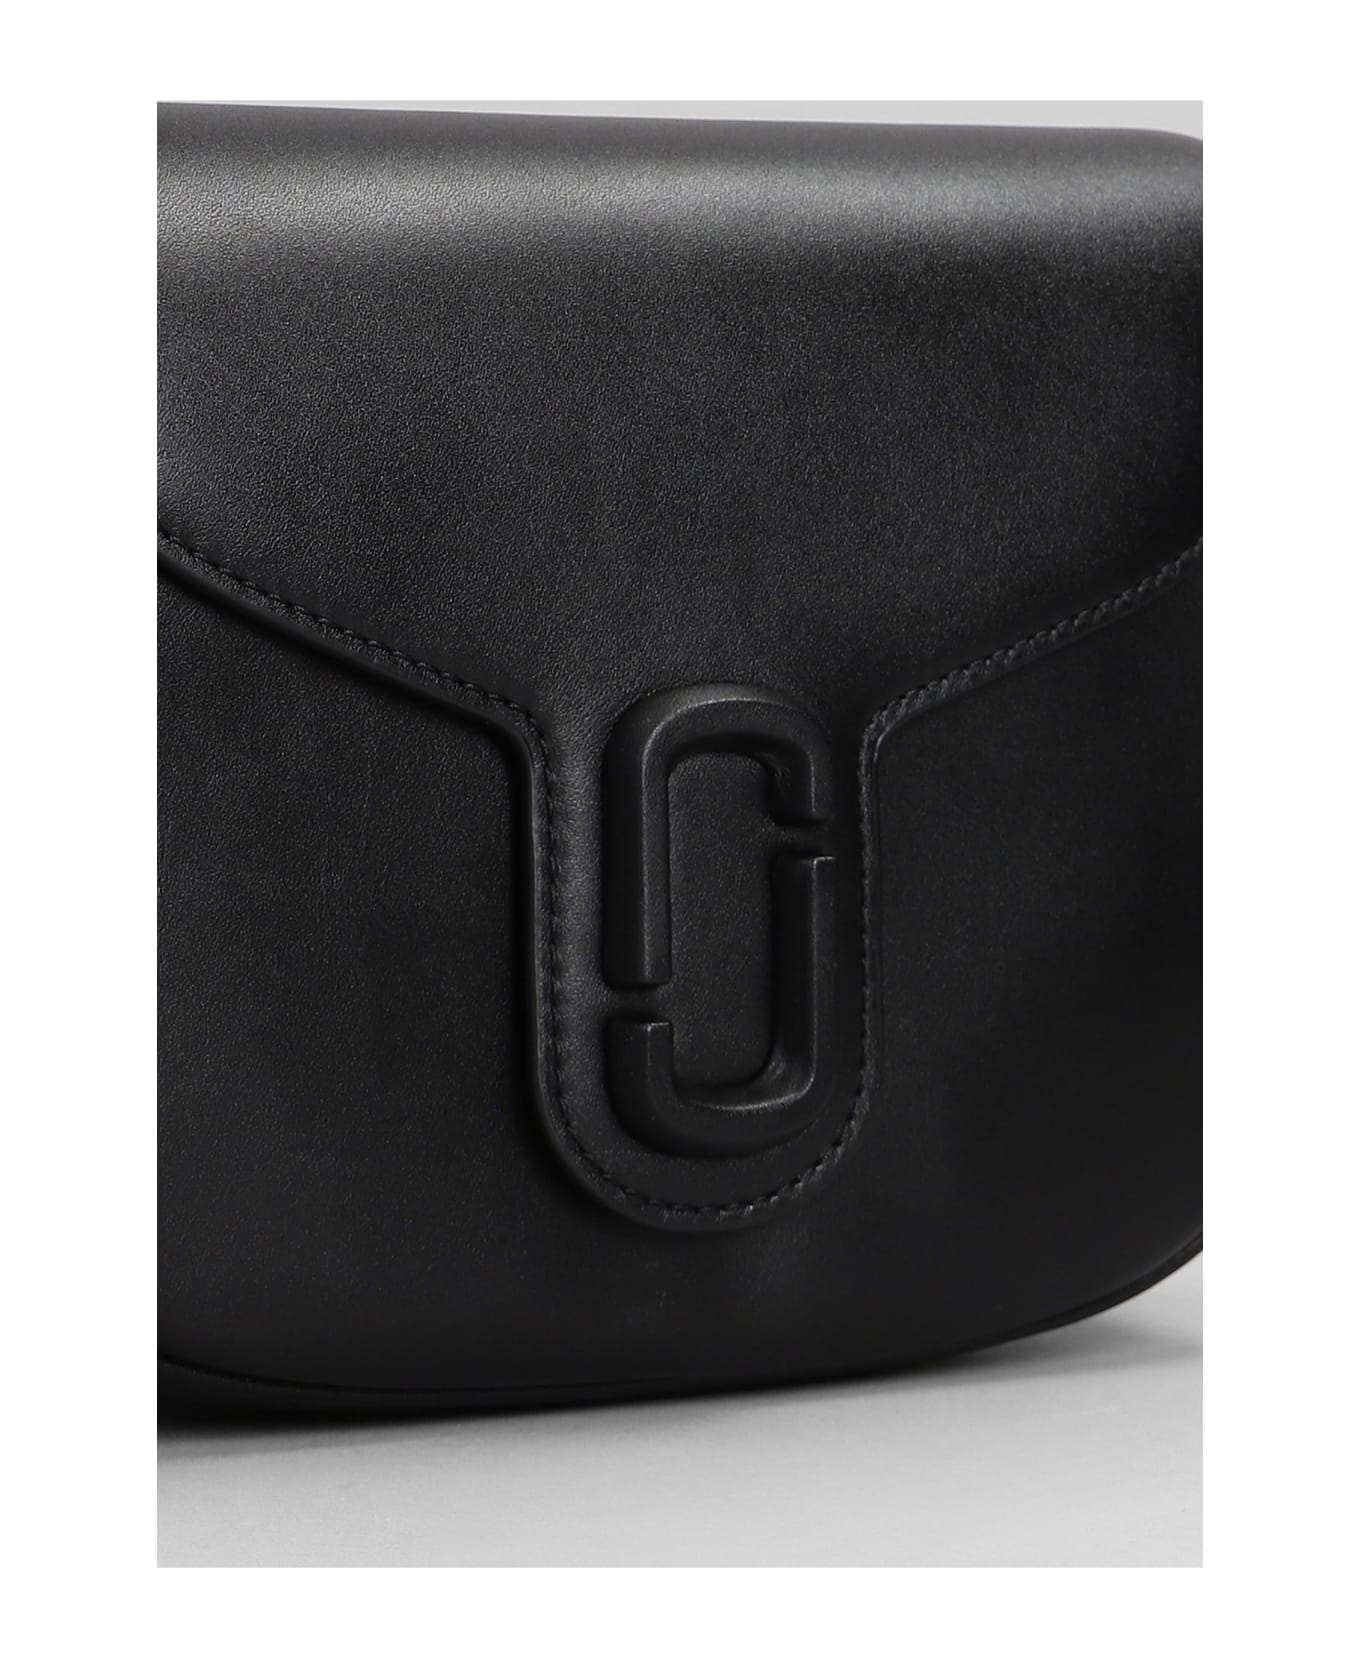 Marc Jacobs Shoulder Bag In Black Leather - black トートバッグ